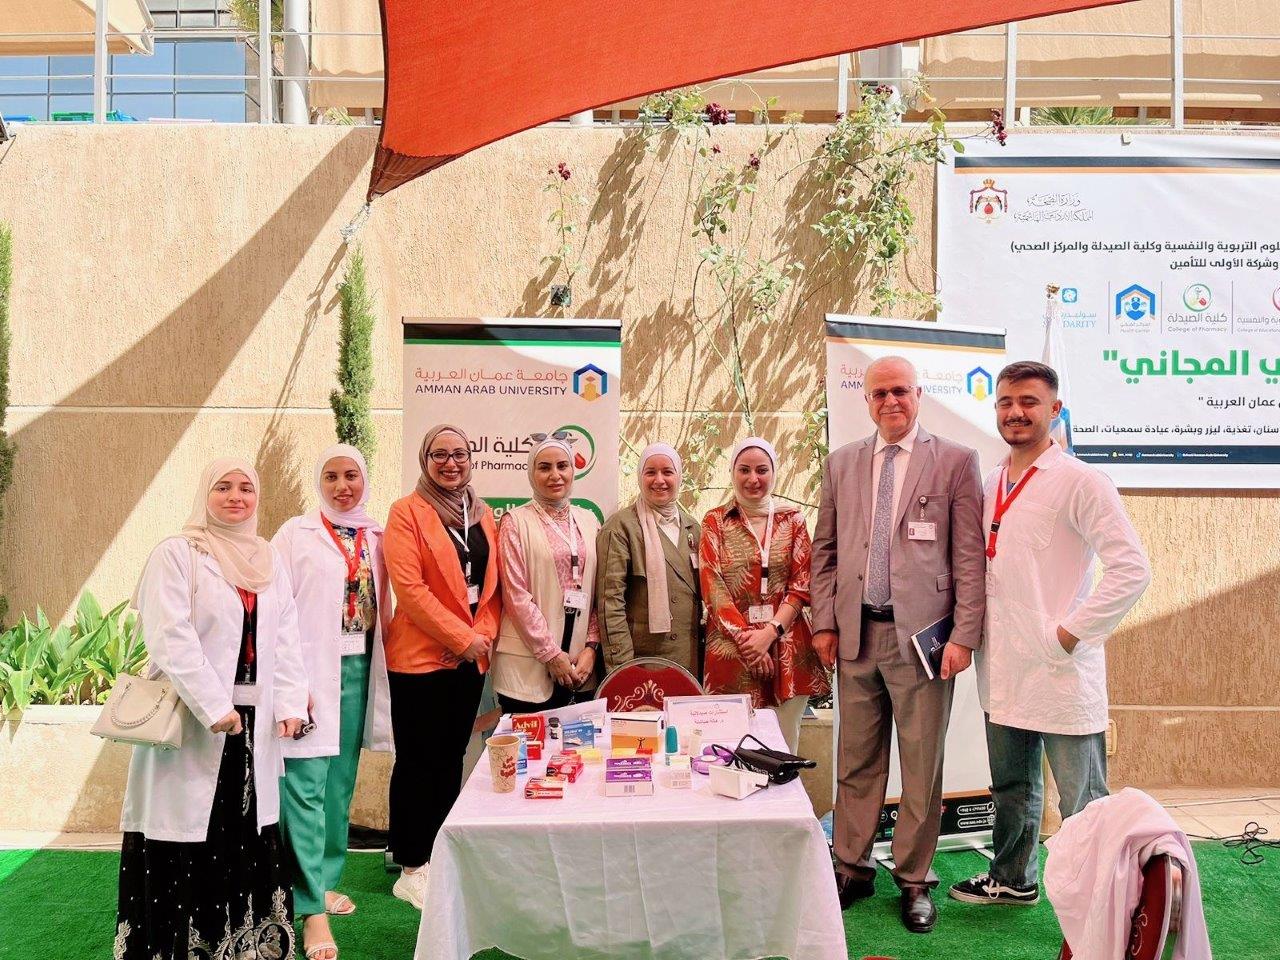 يوم طبي مجاني متميز في جامعة عمان العربية بمشاركة (40) طبيب ومؤسسة متخصصة14